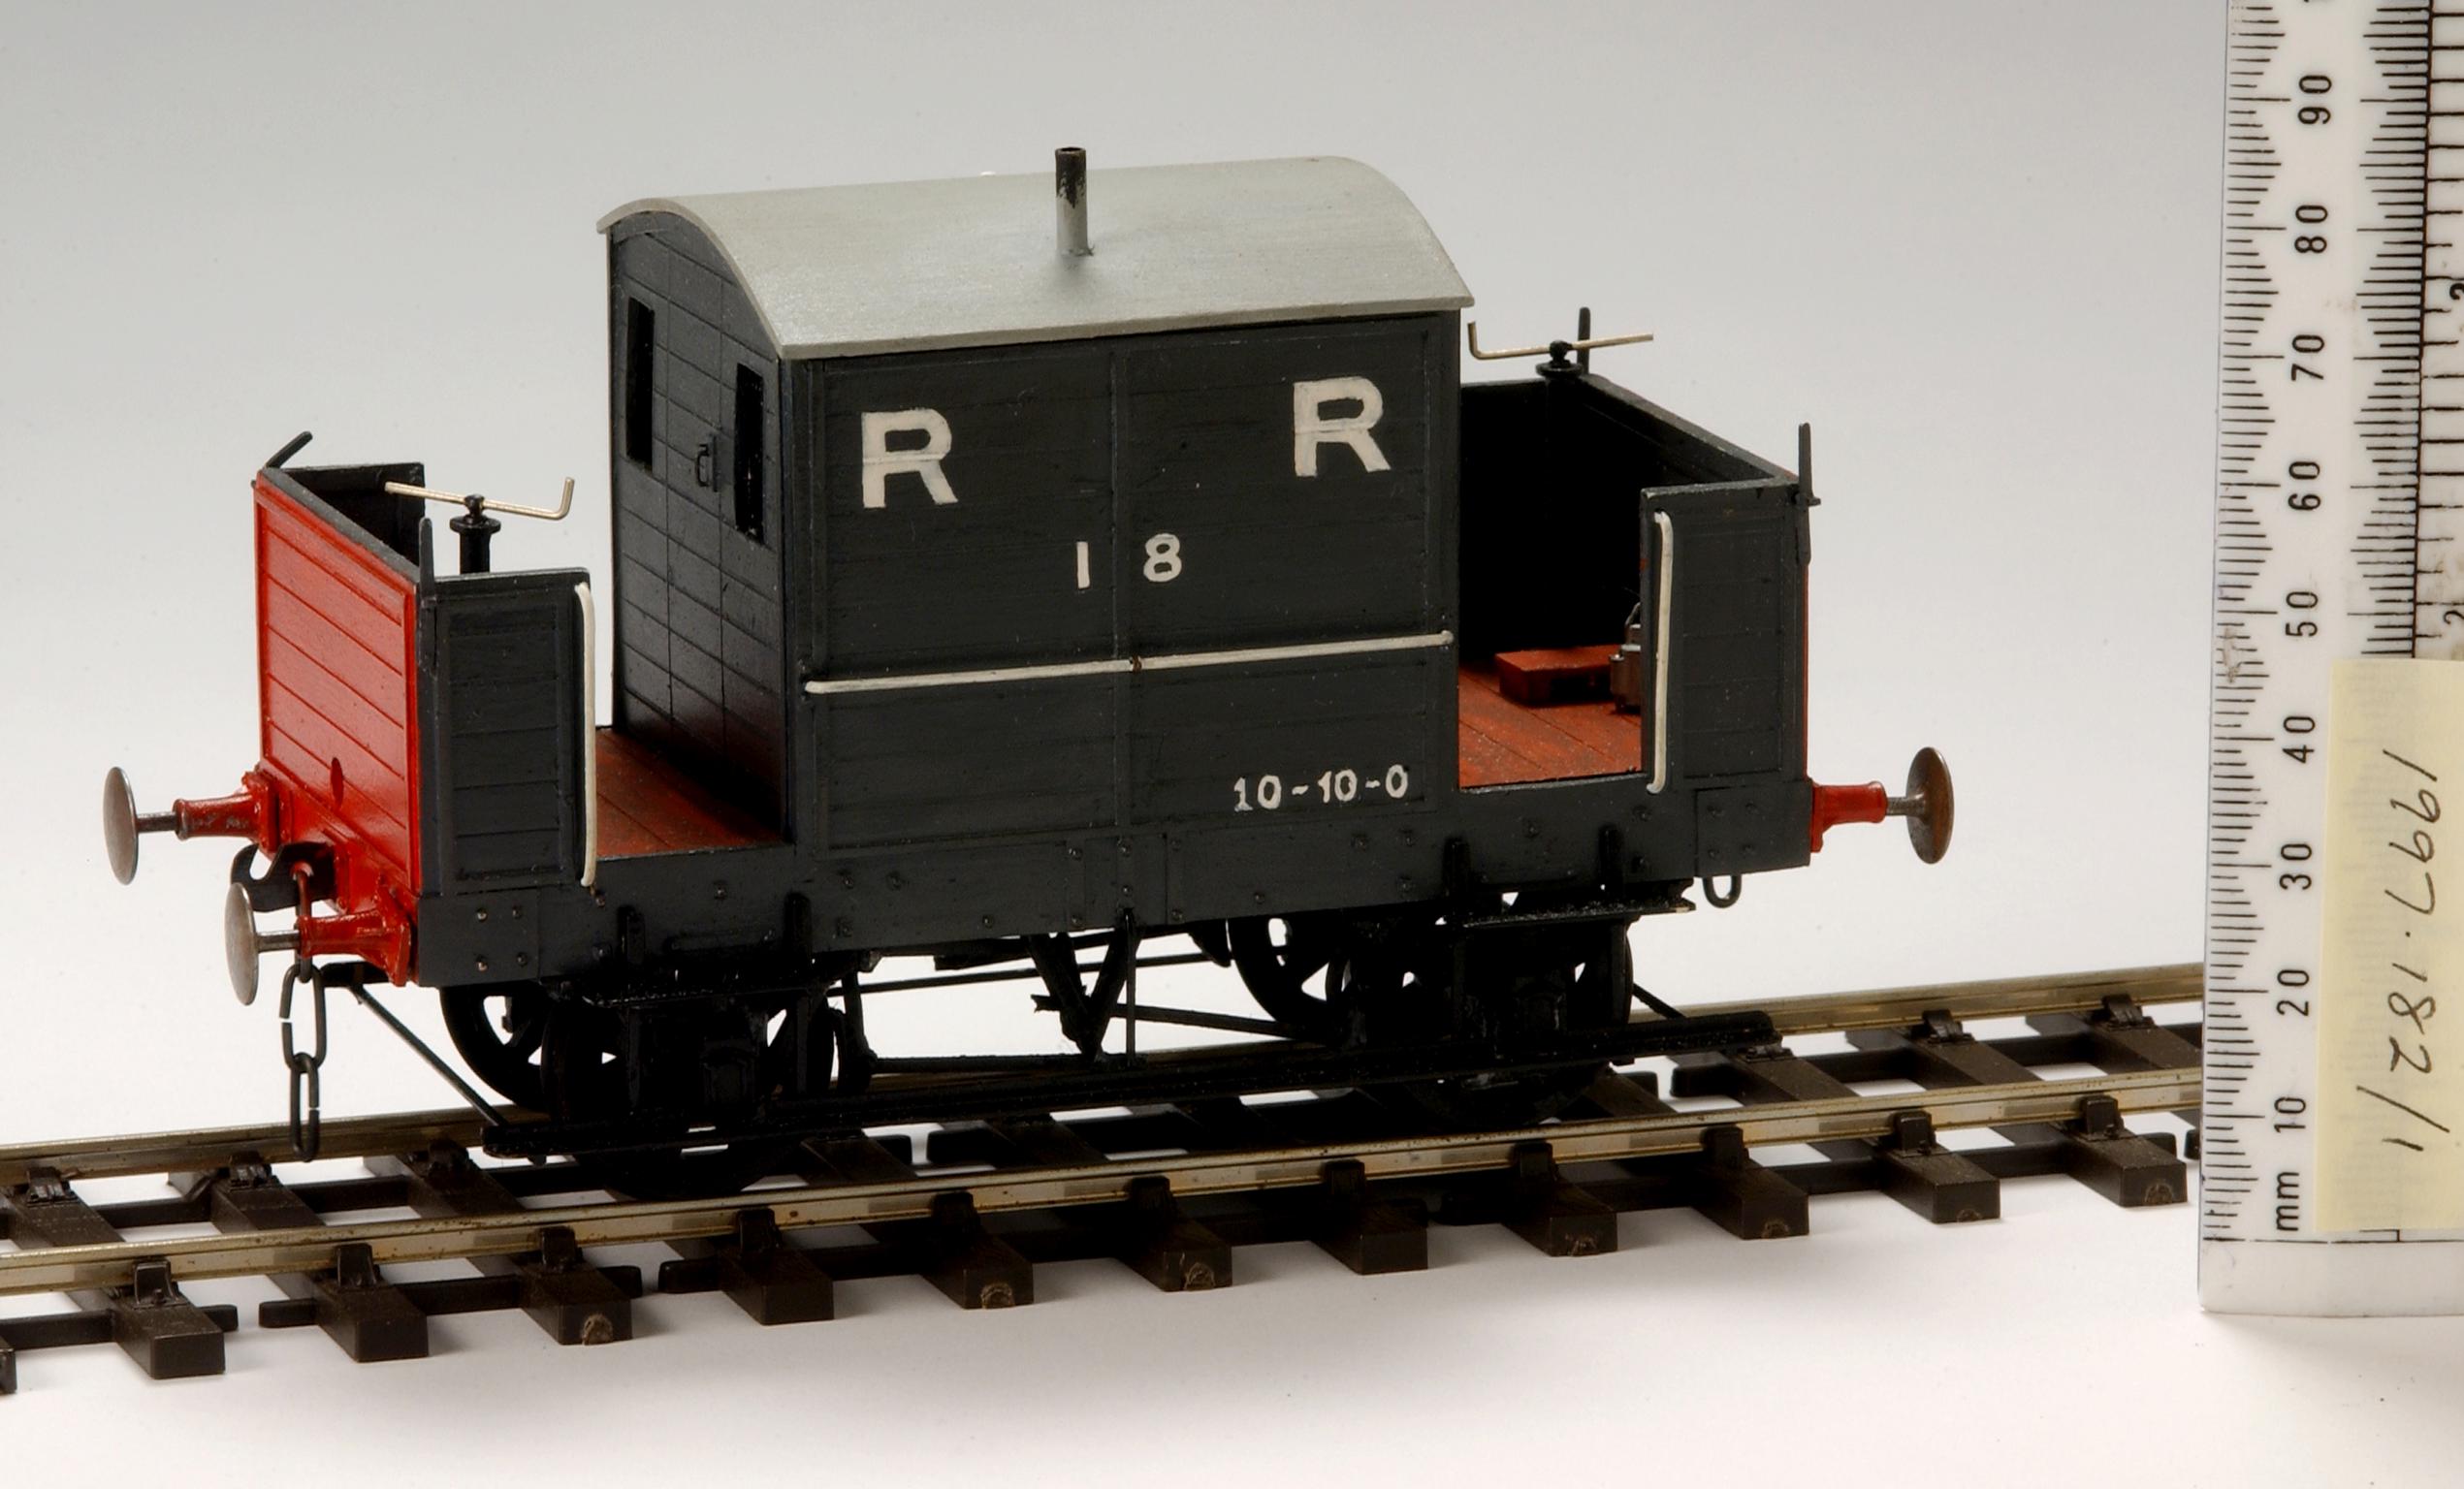 Rhymney Railway van model